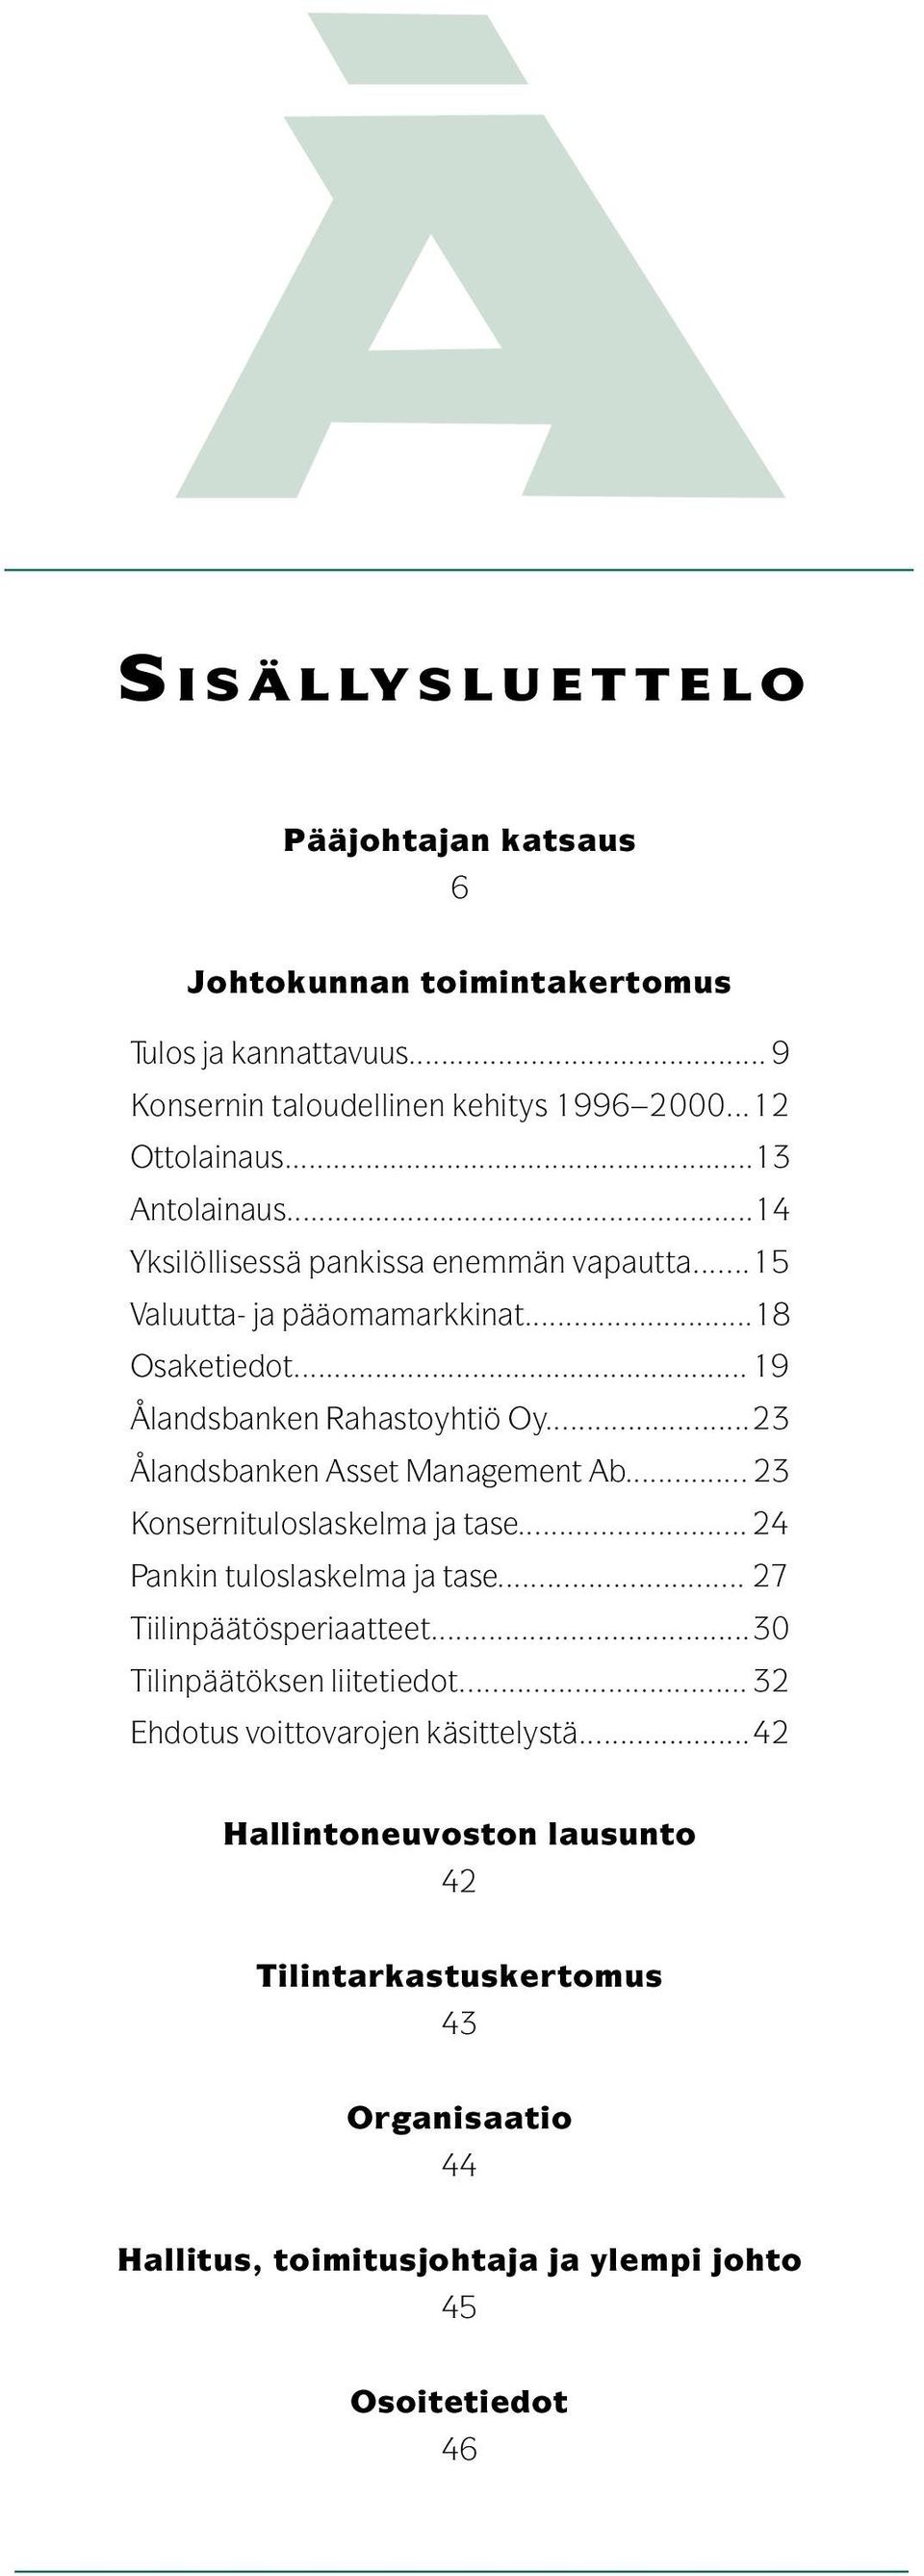 ..23 Ålandsbanken Asset Management Ab... 23 Konsernituloslaskelma ja tase... 24 Pankin tuloslaskelma ja tase... 27 Tiilinpäätösperiaatteet.